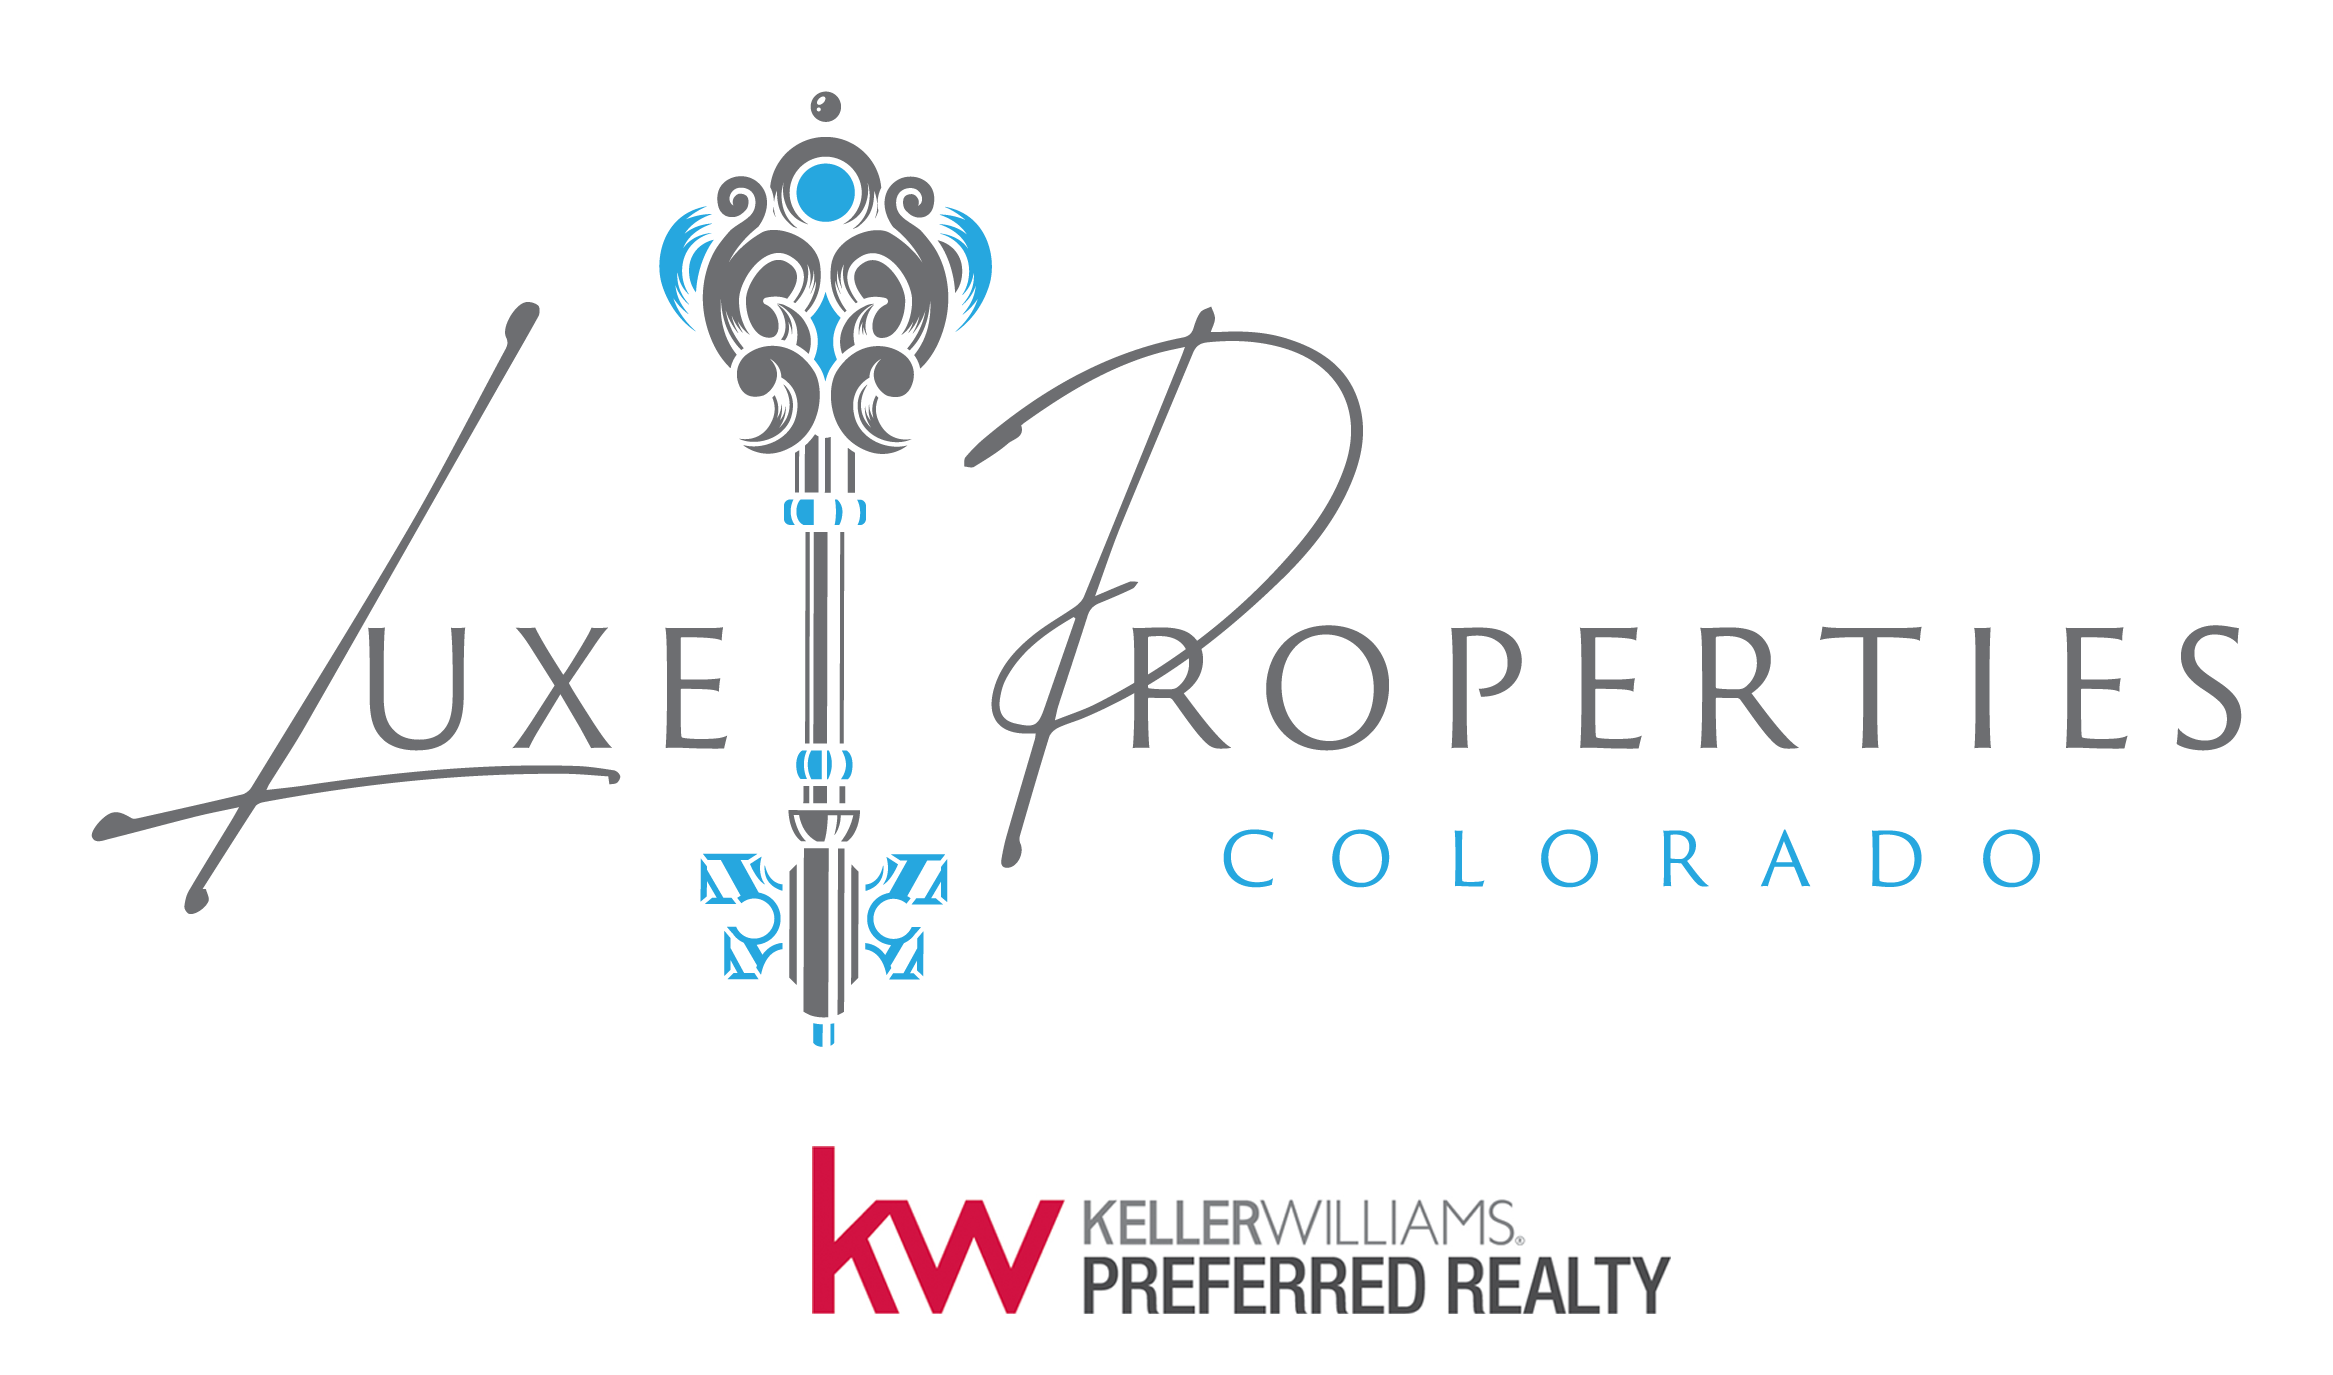 Luxe Properties Colorado  - Keller Williams Preferred Realty